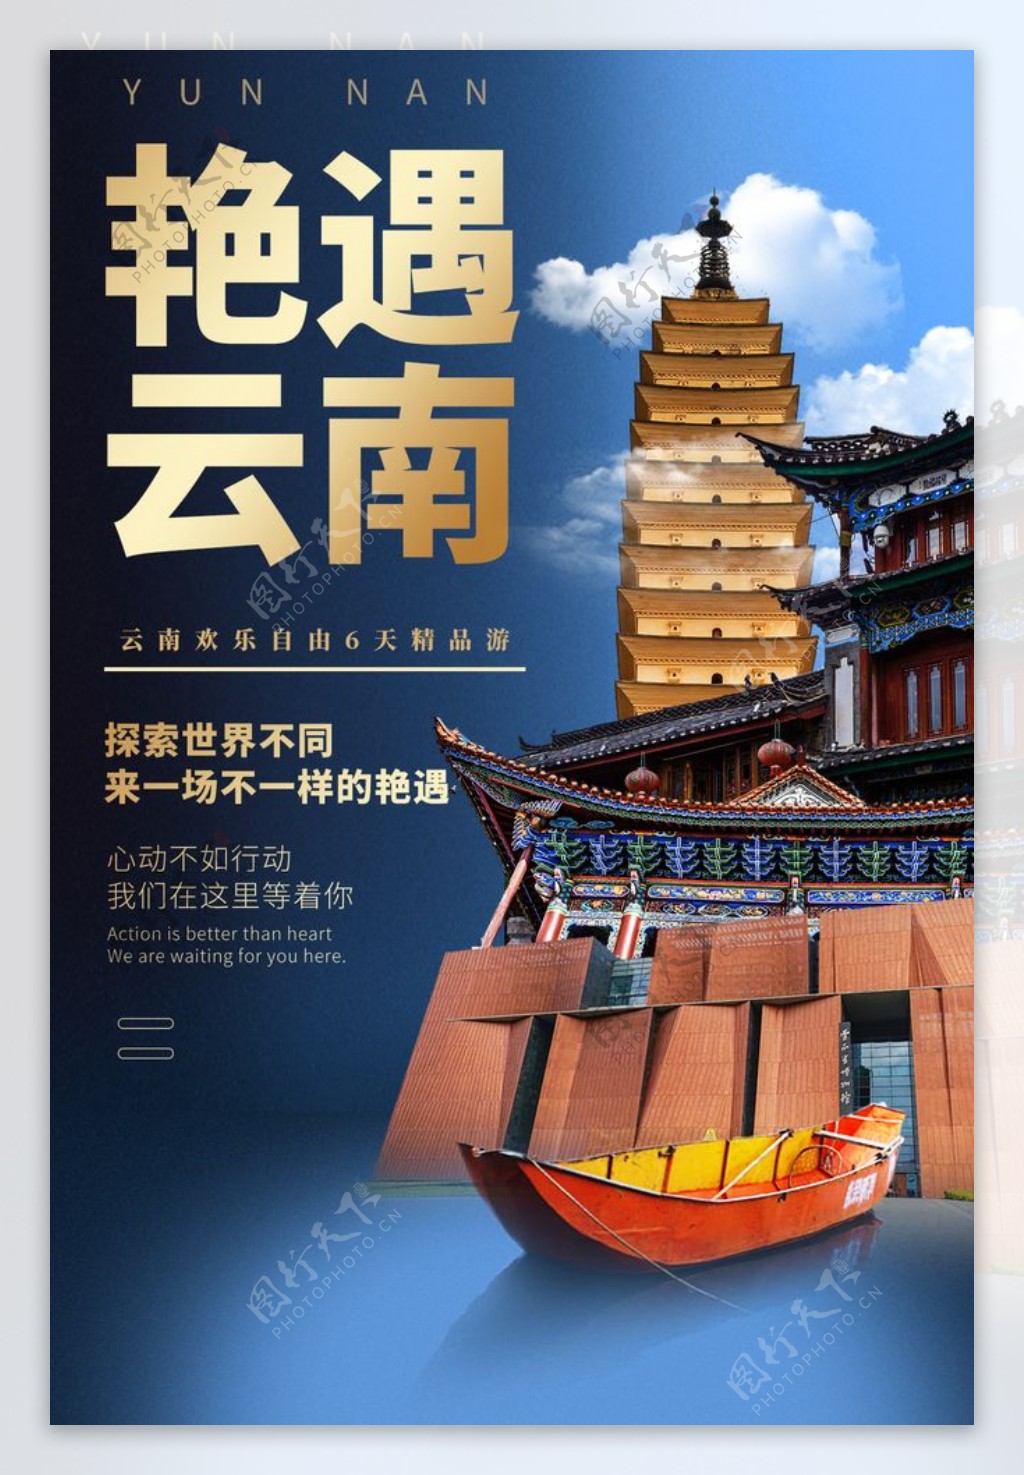 艳遇云南旅游旅行宣传海报素材